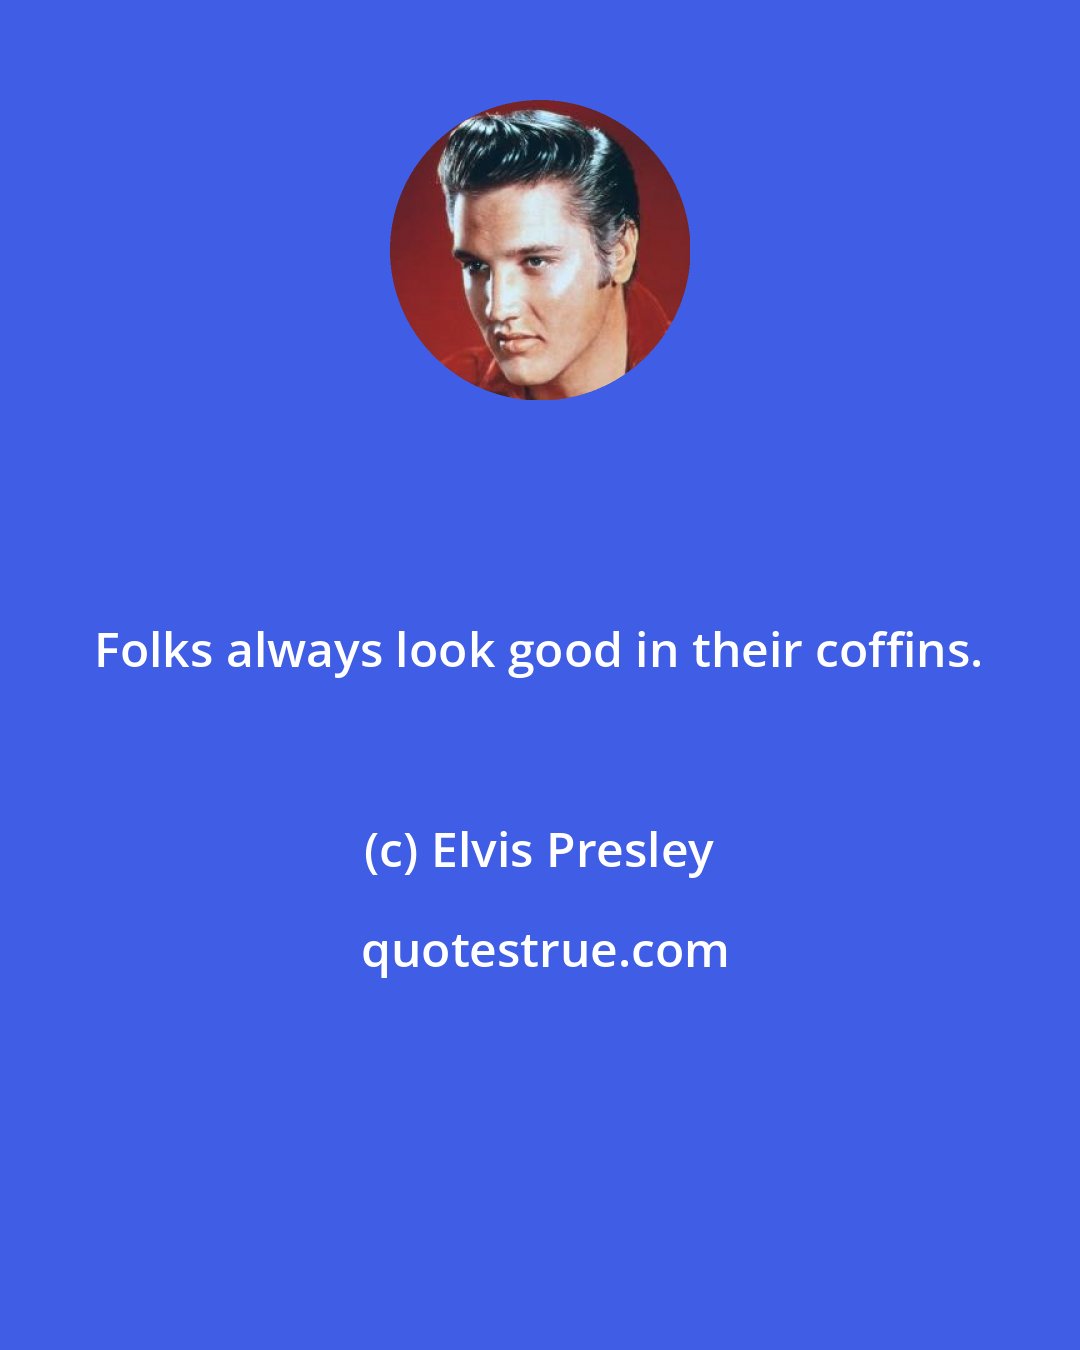 Elvis Presley: Folks always look good in their coffins.